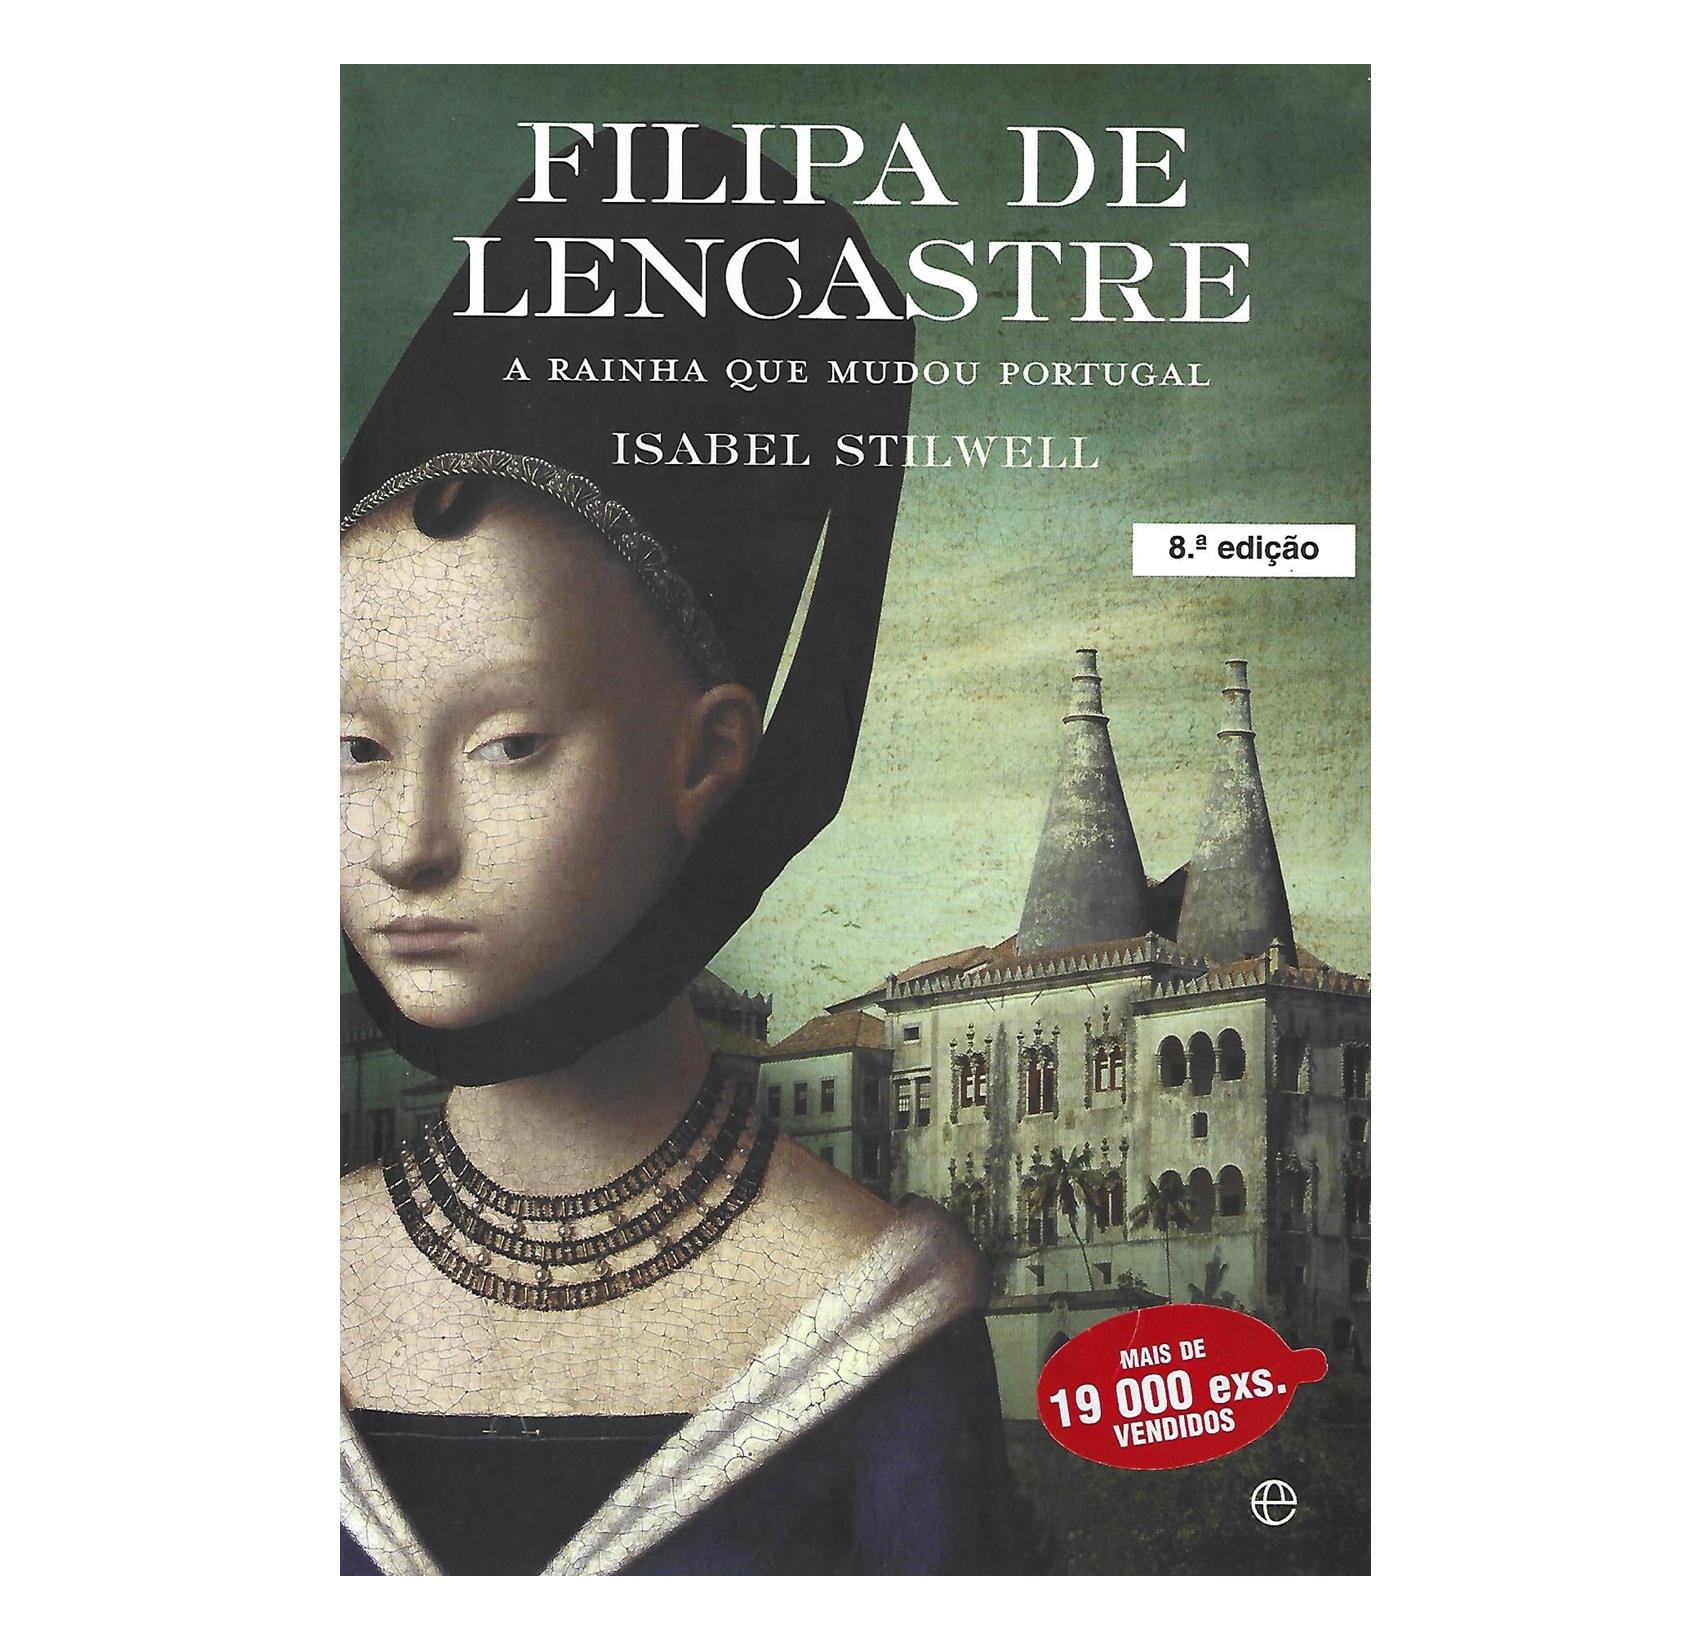 FILIPA DE LENCASTRE: A RAINHA QUE MUDOU PORTUGAL